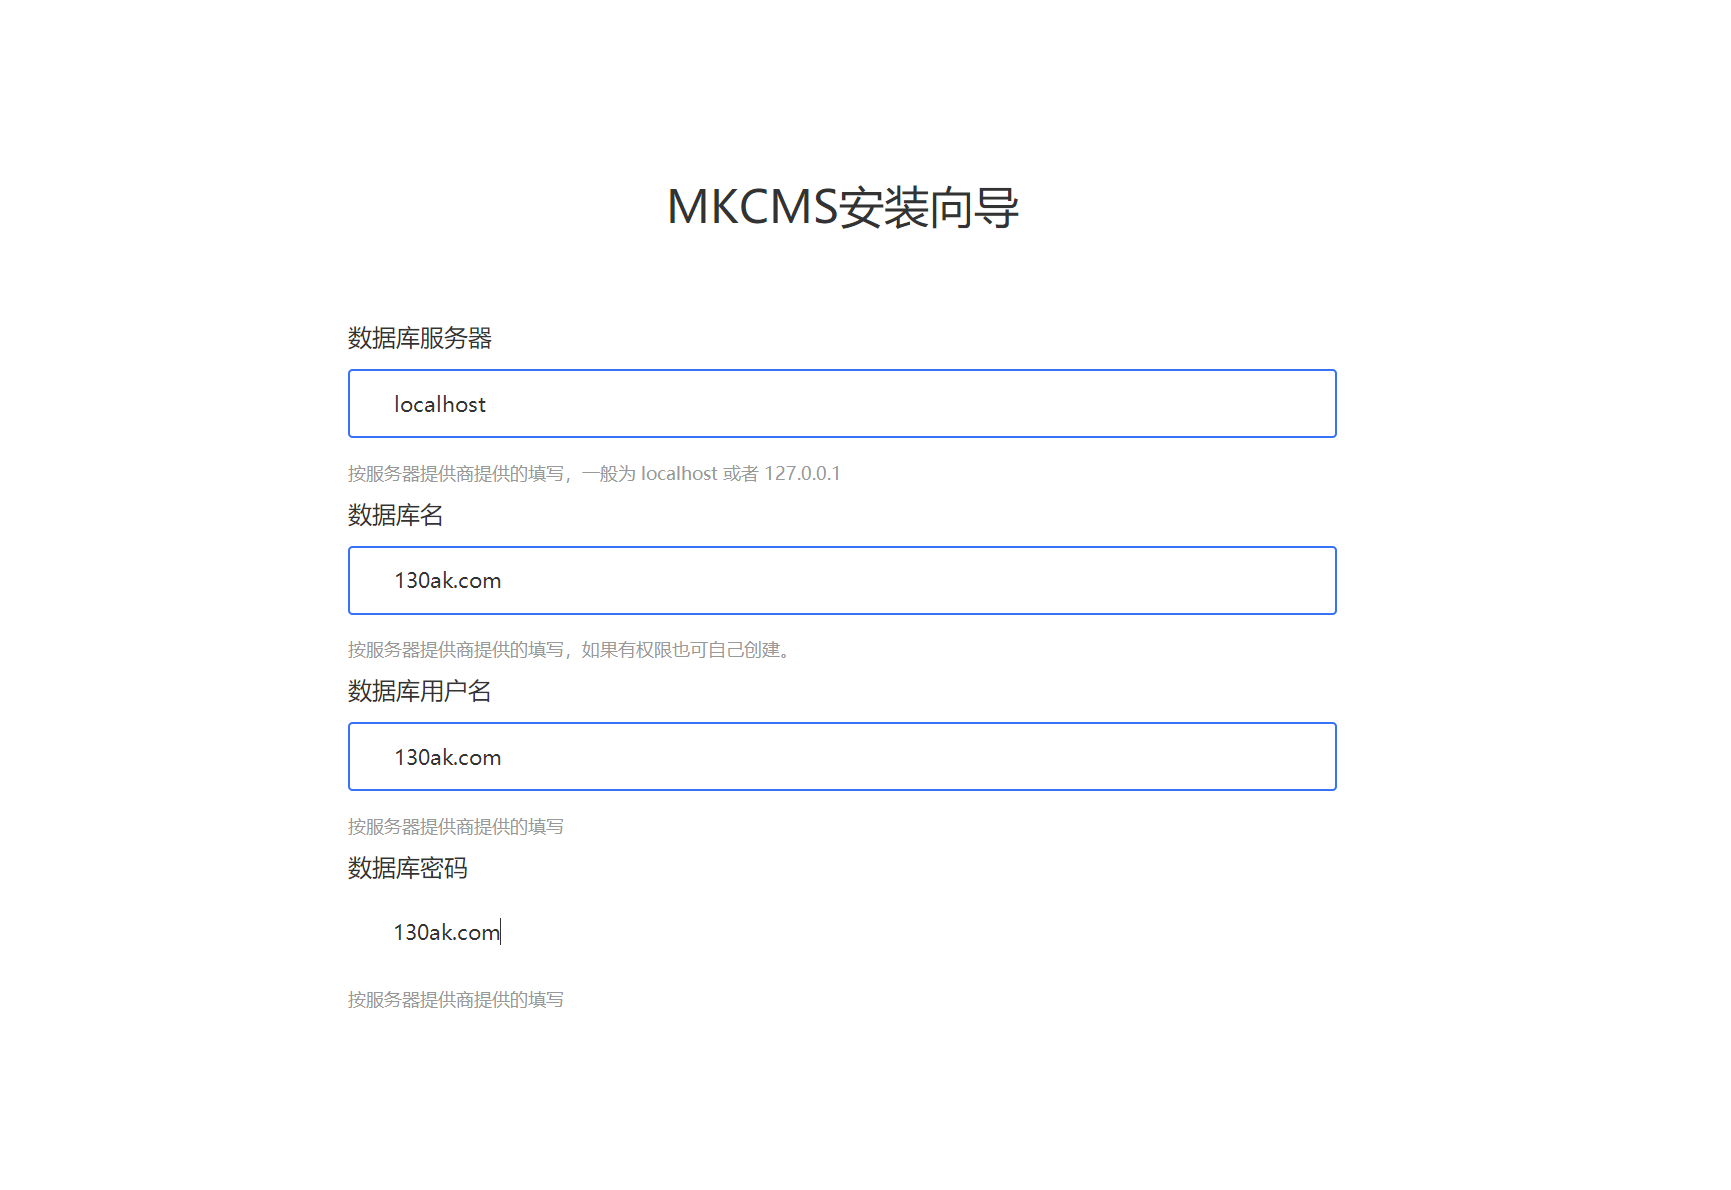 mkcms米酷7.03影视安装步骤+使用说明[建站教程]-度崩网-几度崩溃